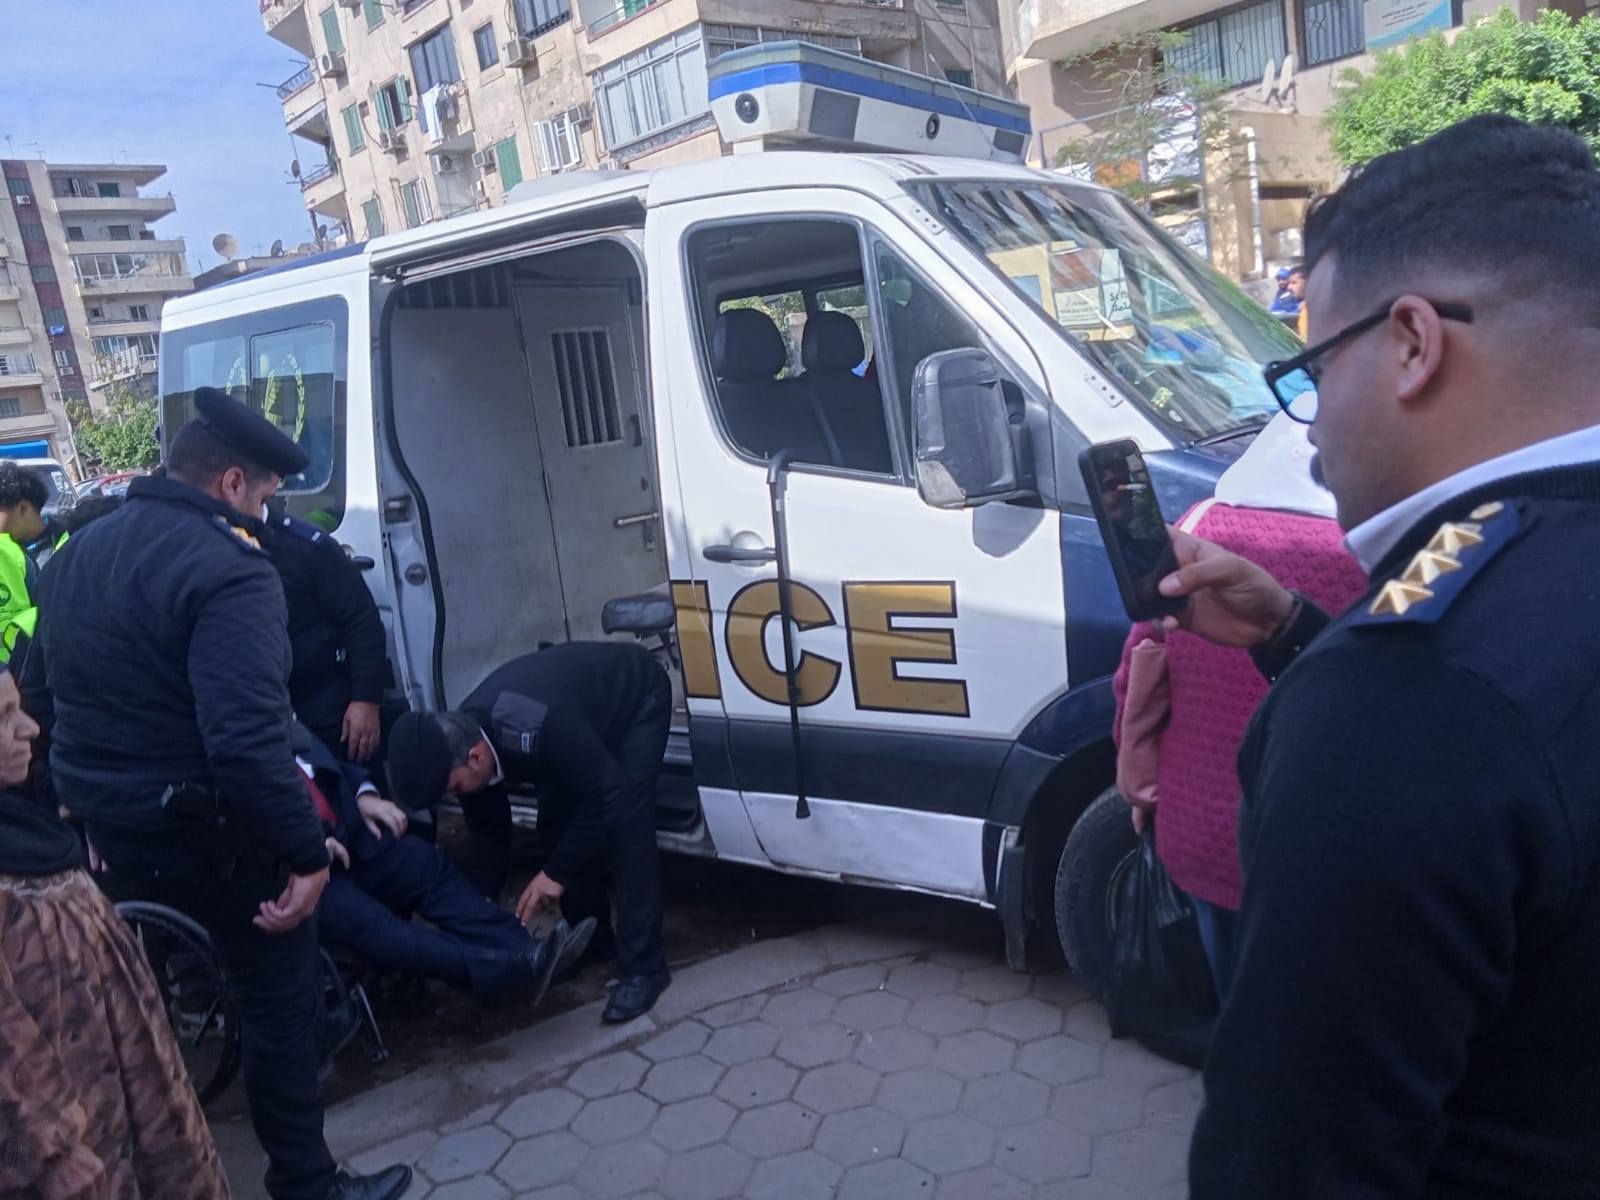 سيارة شرطة تنقل ناخب مسن الى مقر لجنته بمدرسة ليسيه الحرية بمصر الجديدة (2)